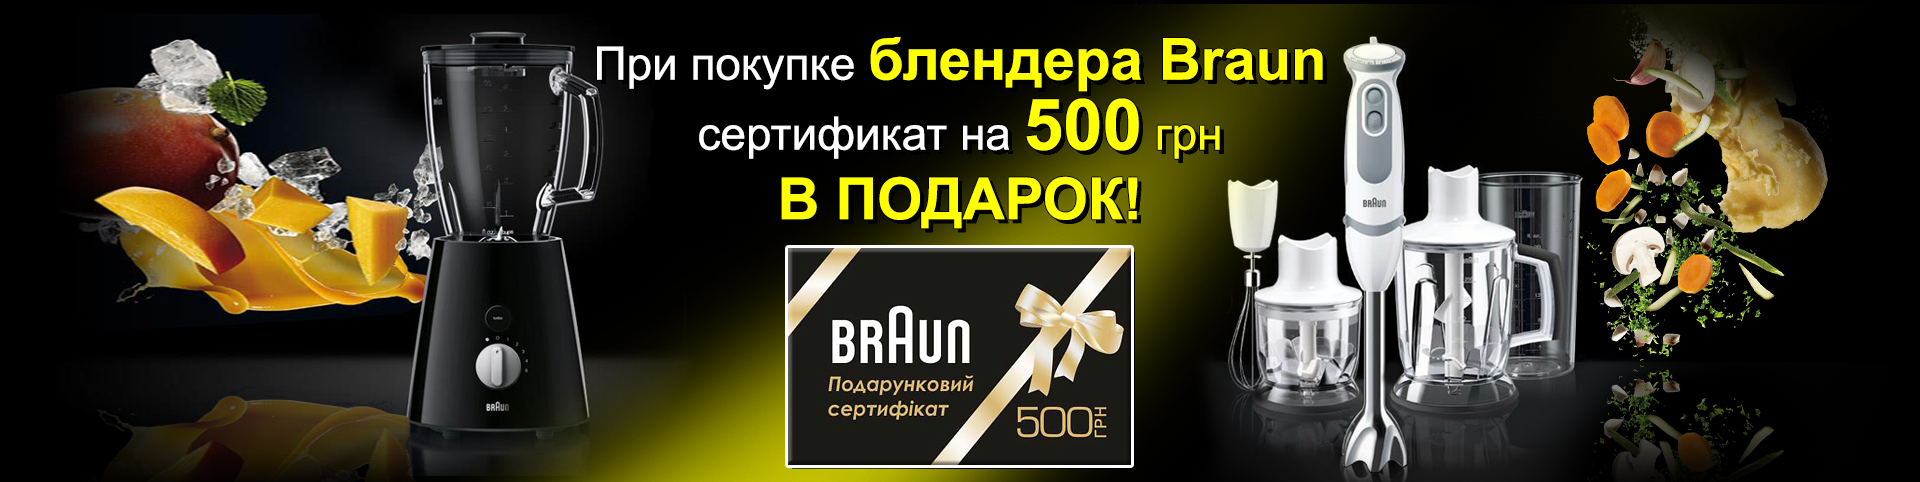 Покупая блендер Braun, в подарок вы получаете сертификат на 500 гривен